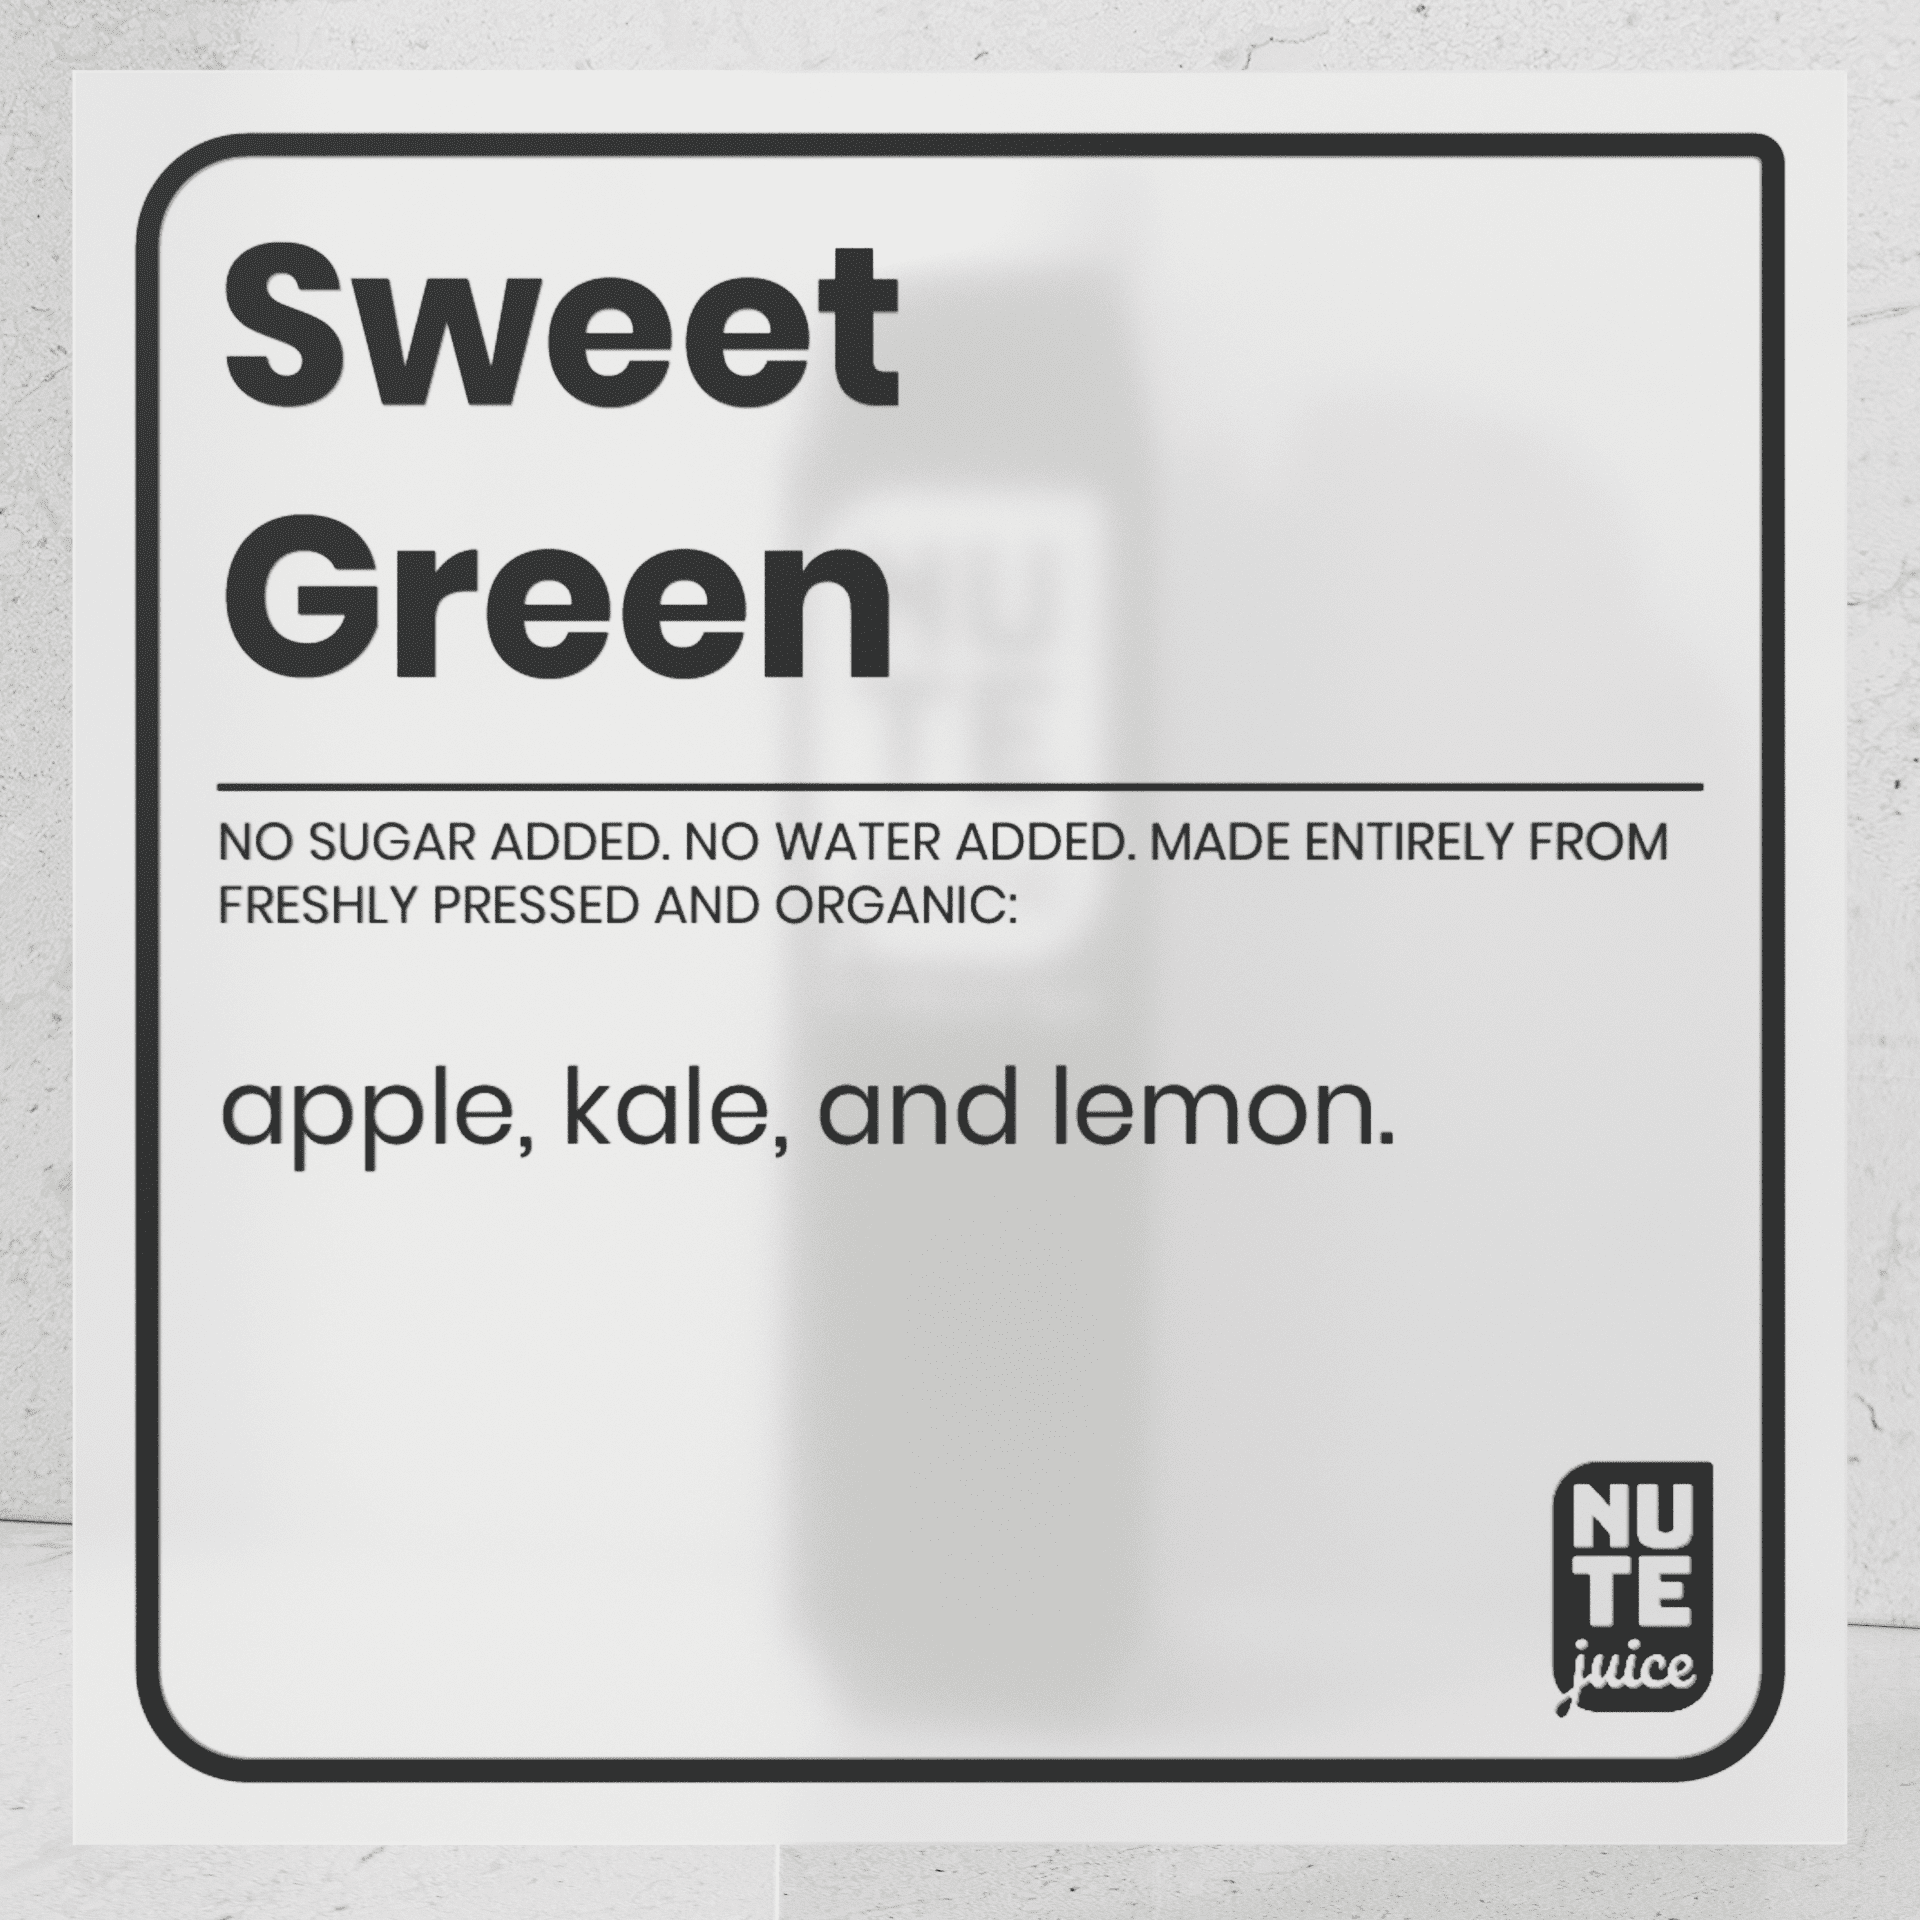 sweet green ingredients